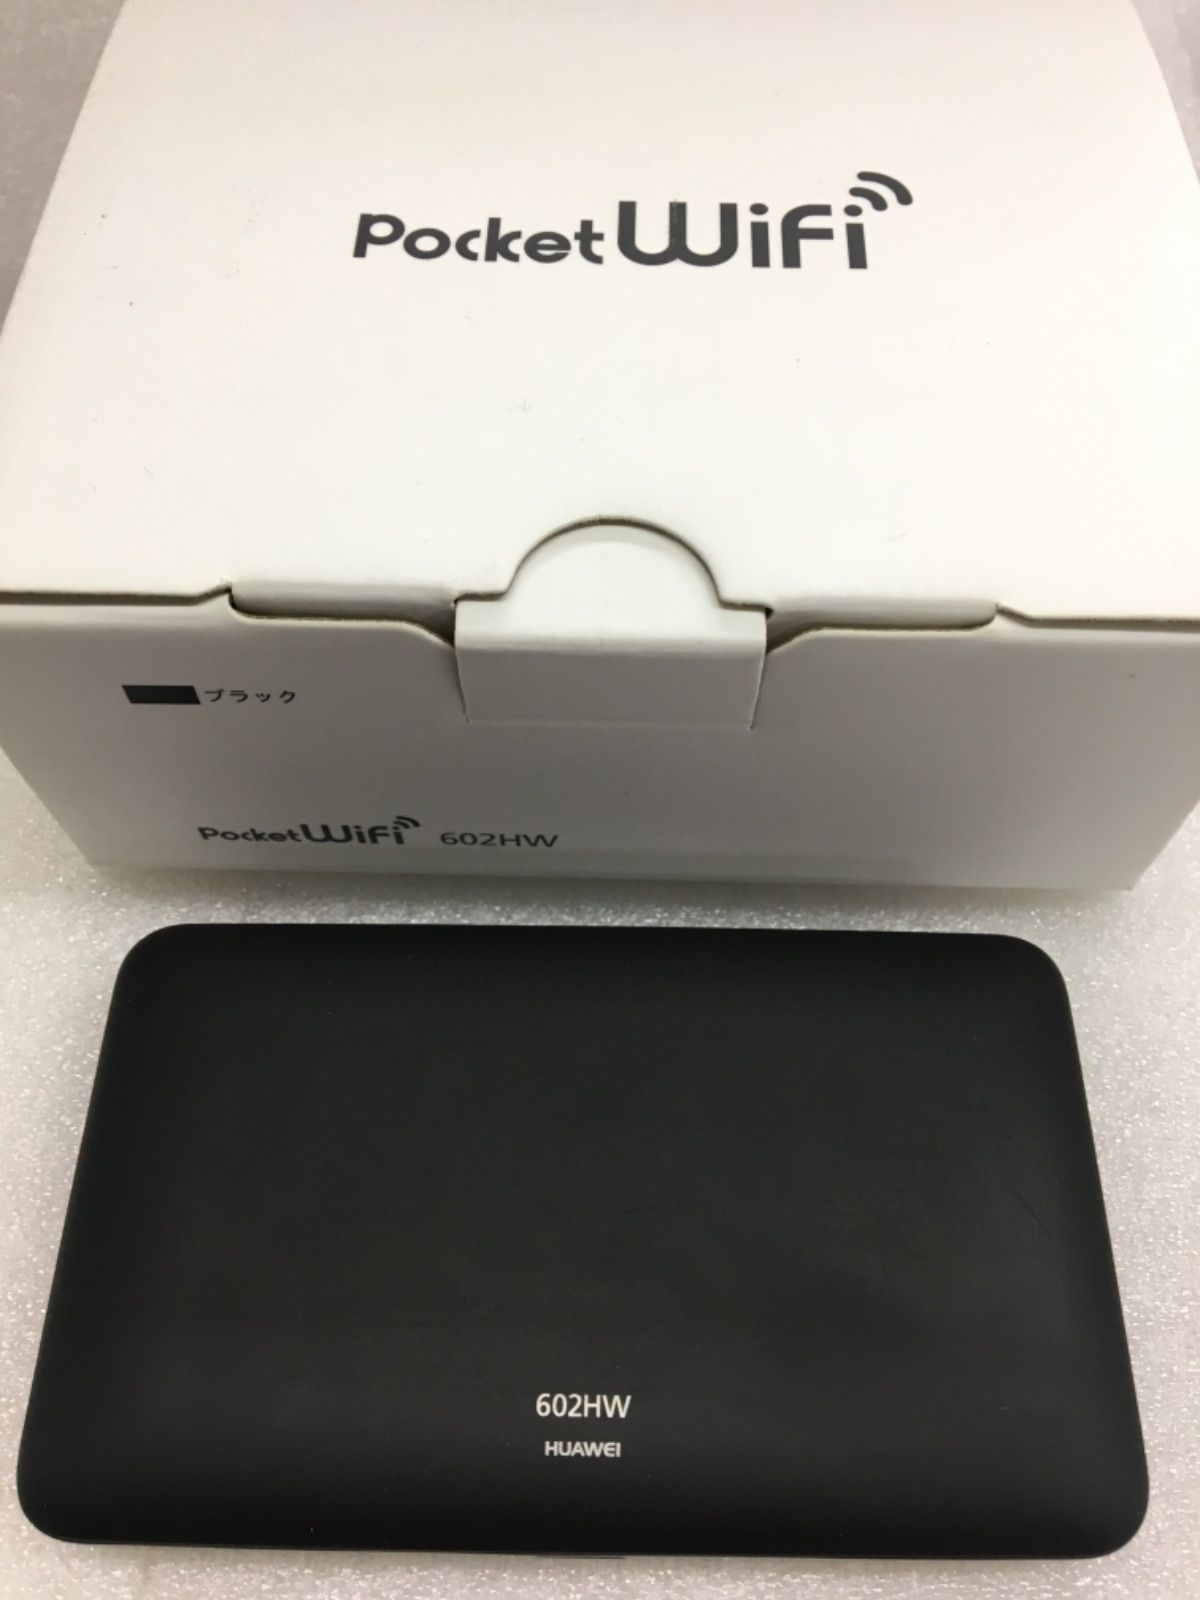 ソフトバンクモバイルHUAWEI Pocket WiFi 602HW - メルカリ